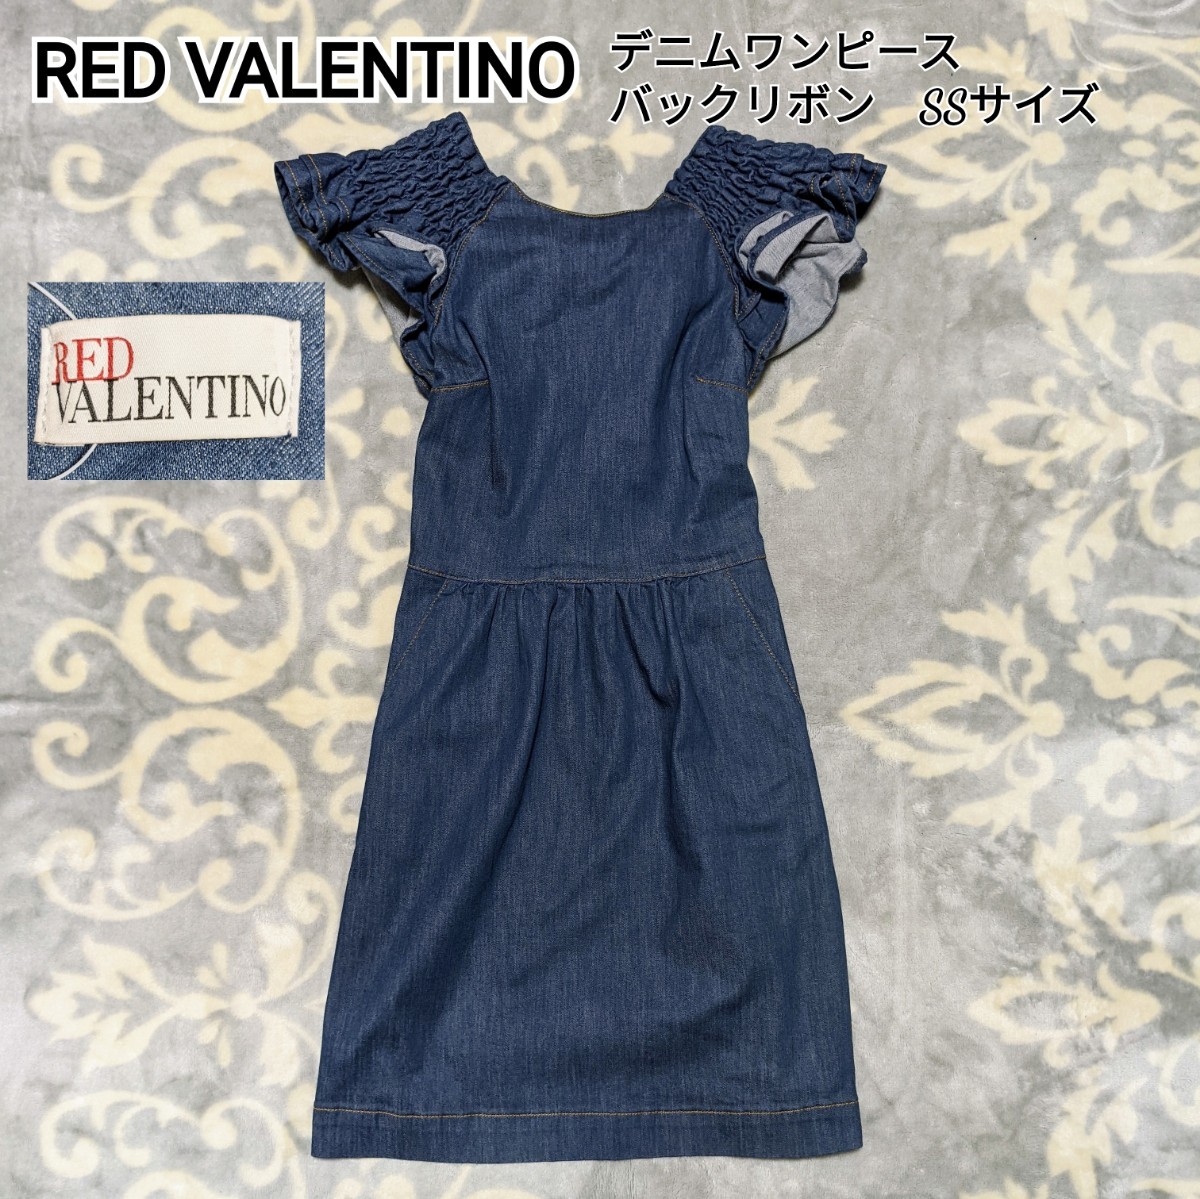 セット送料無料 red valentino レッドヴァレンティノ ワンピース 白 未 